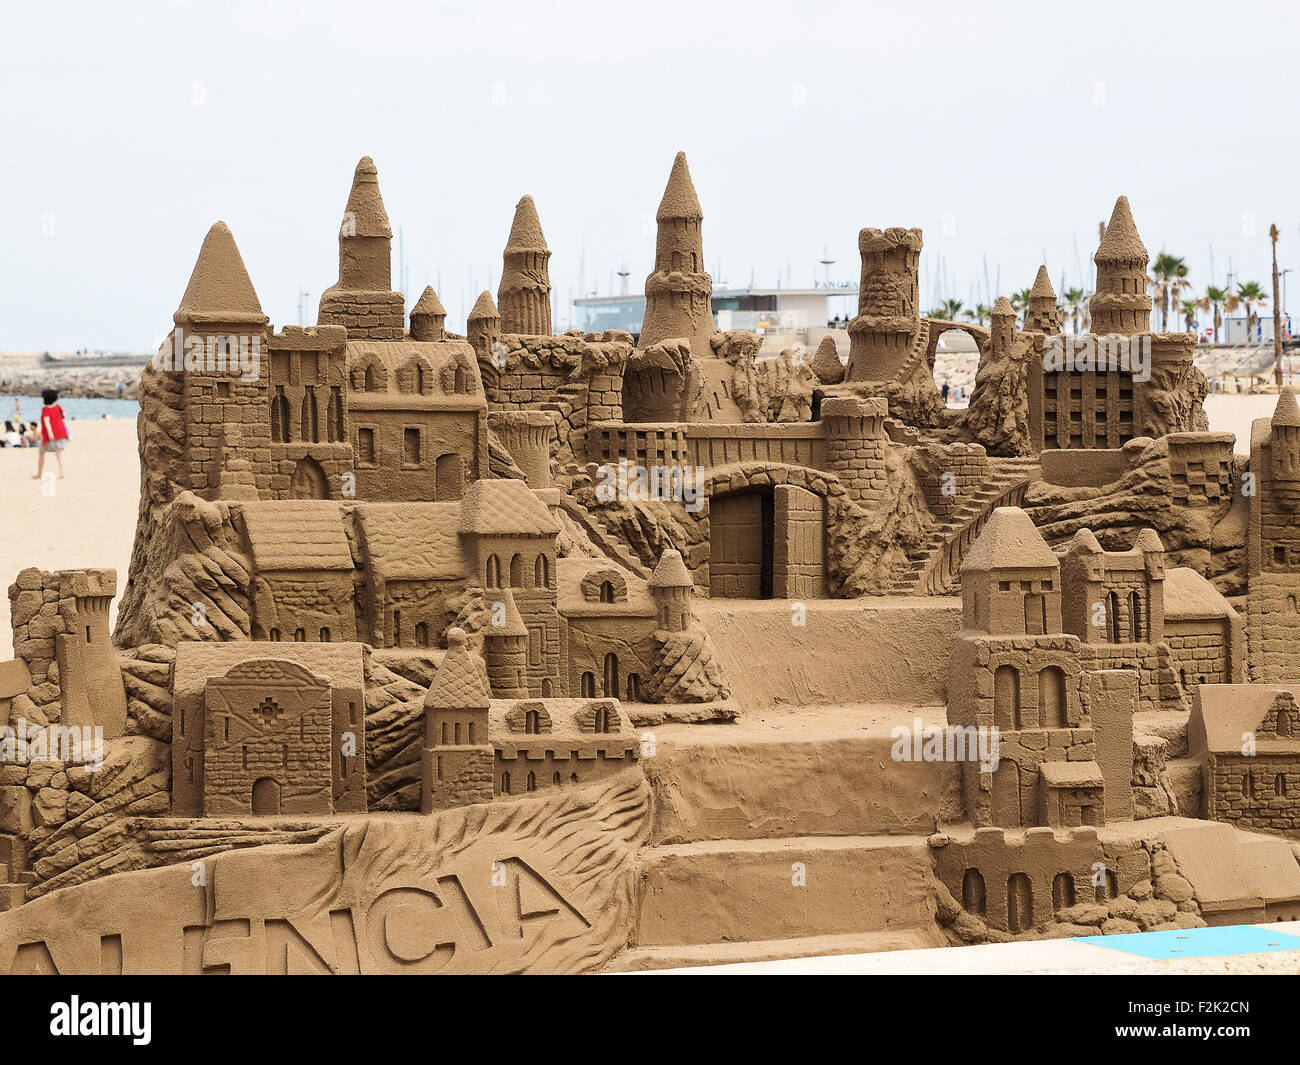 Il s'agit d'un somptueux et grand château de sable sur une plage vide. Banque D'Images